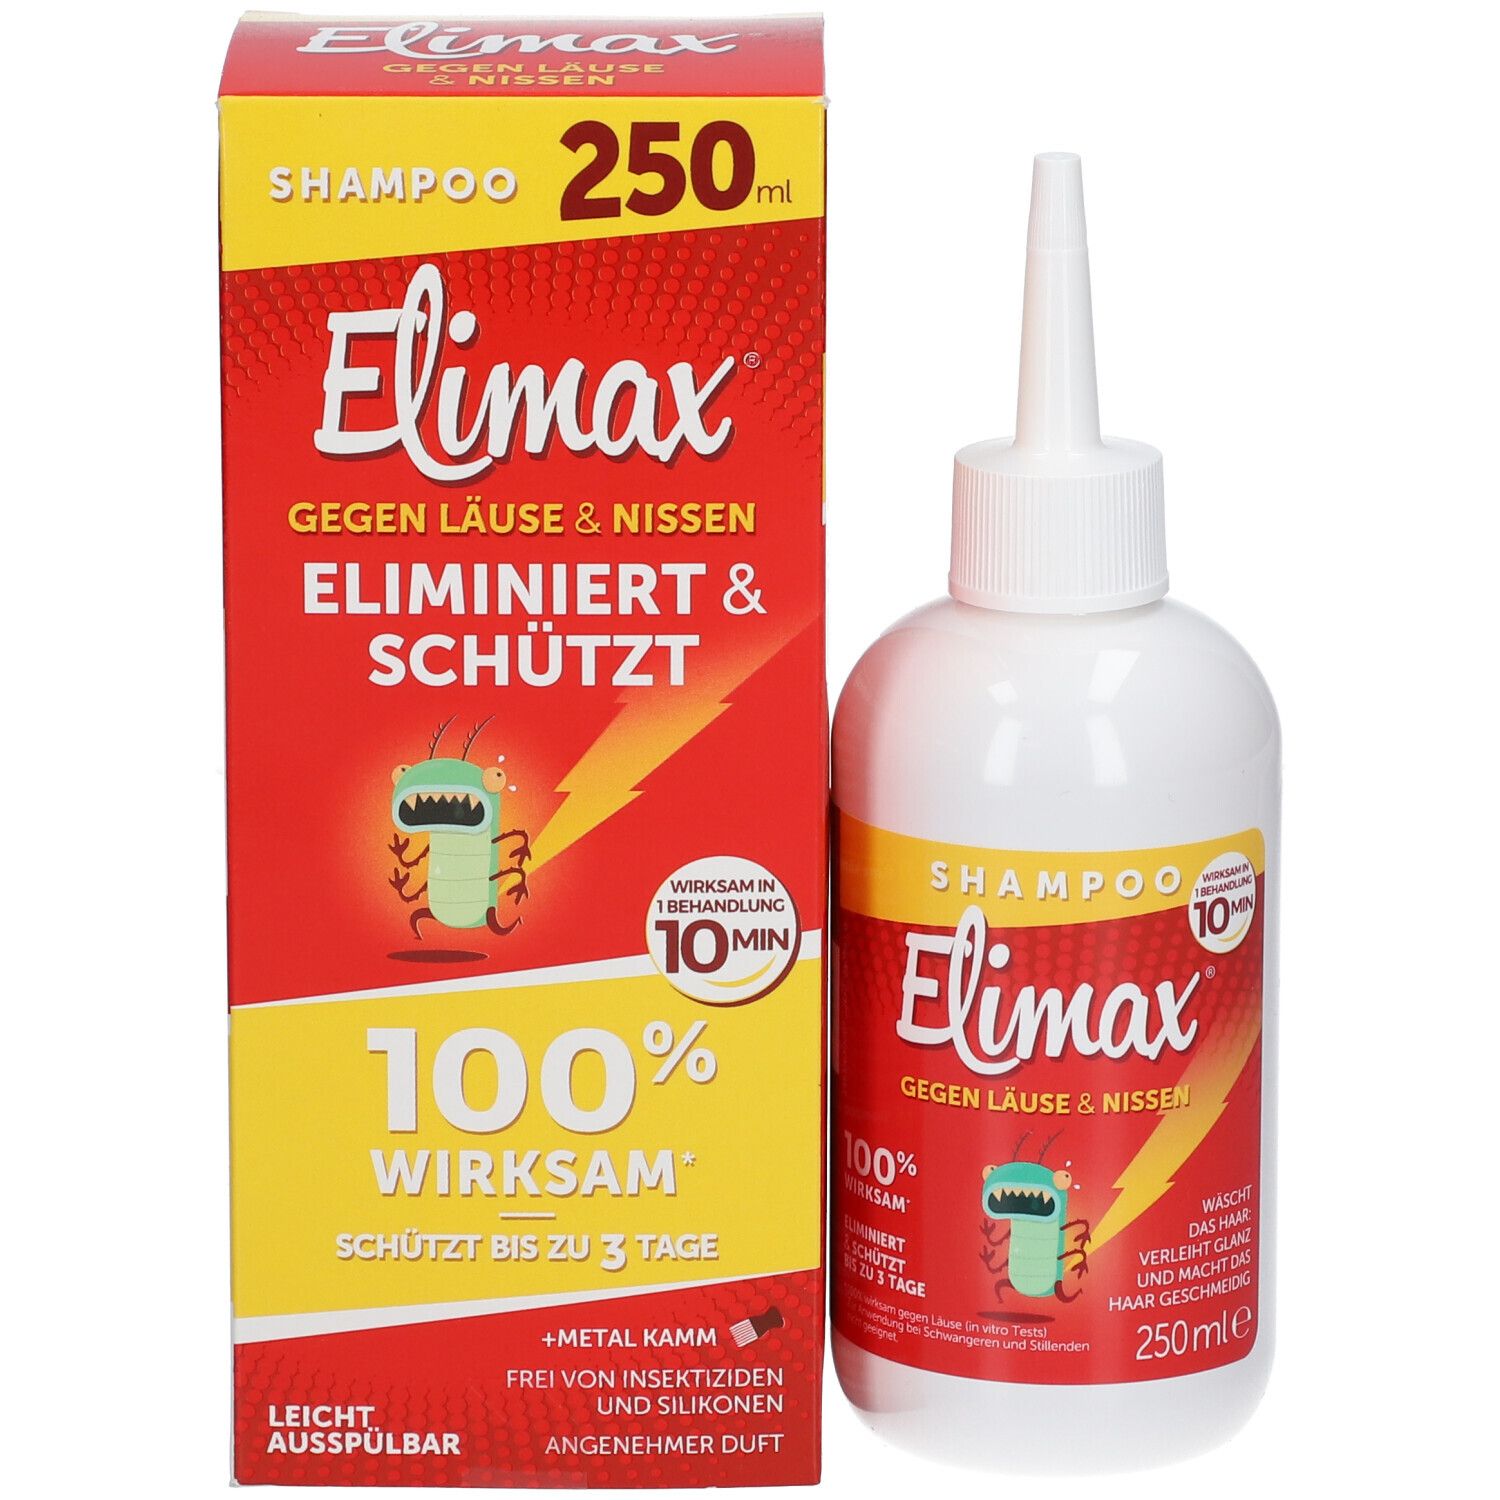 Elimax® Anti Laus Shampoo 250 ml 250 ml - Shop Apotheke